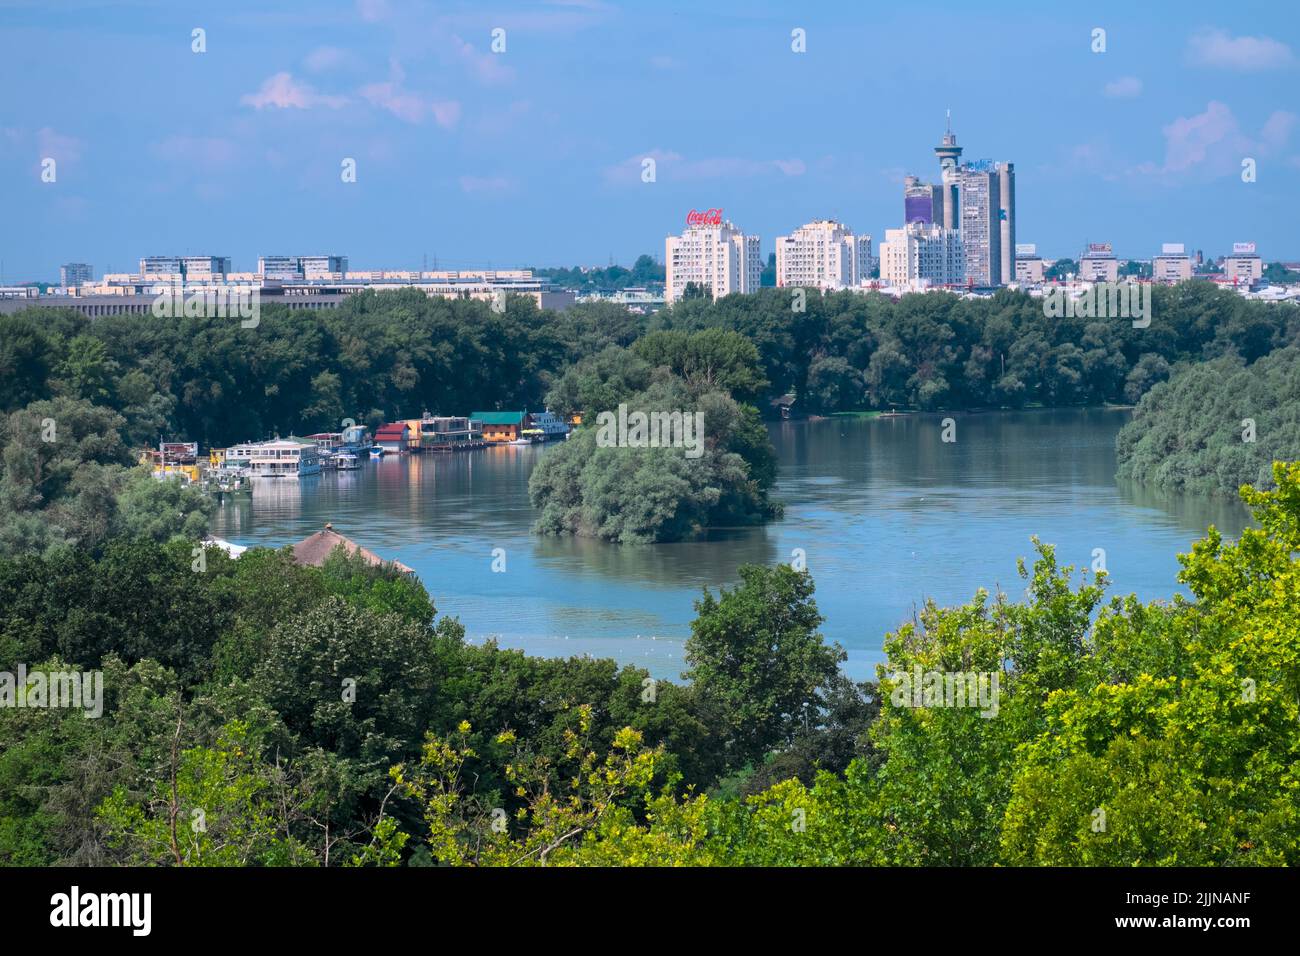 Belgrade cityscape with Danube River and skyscrapers, Serbia Stock Photo